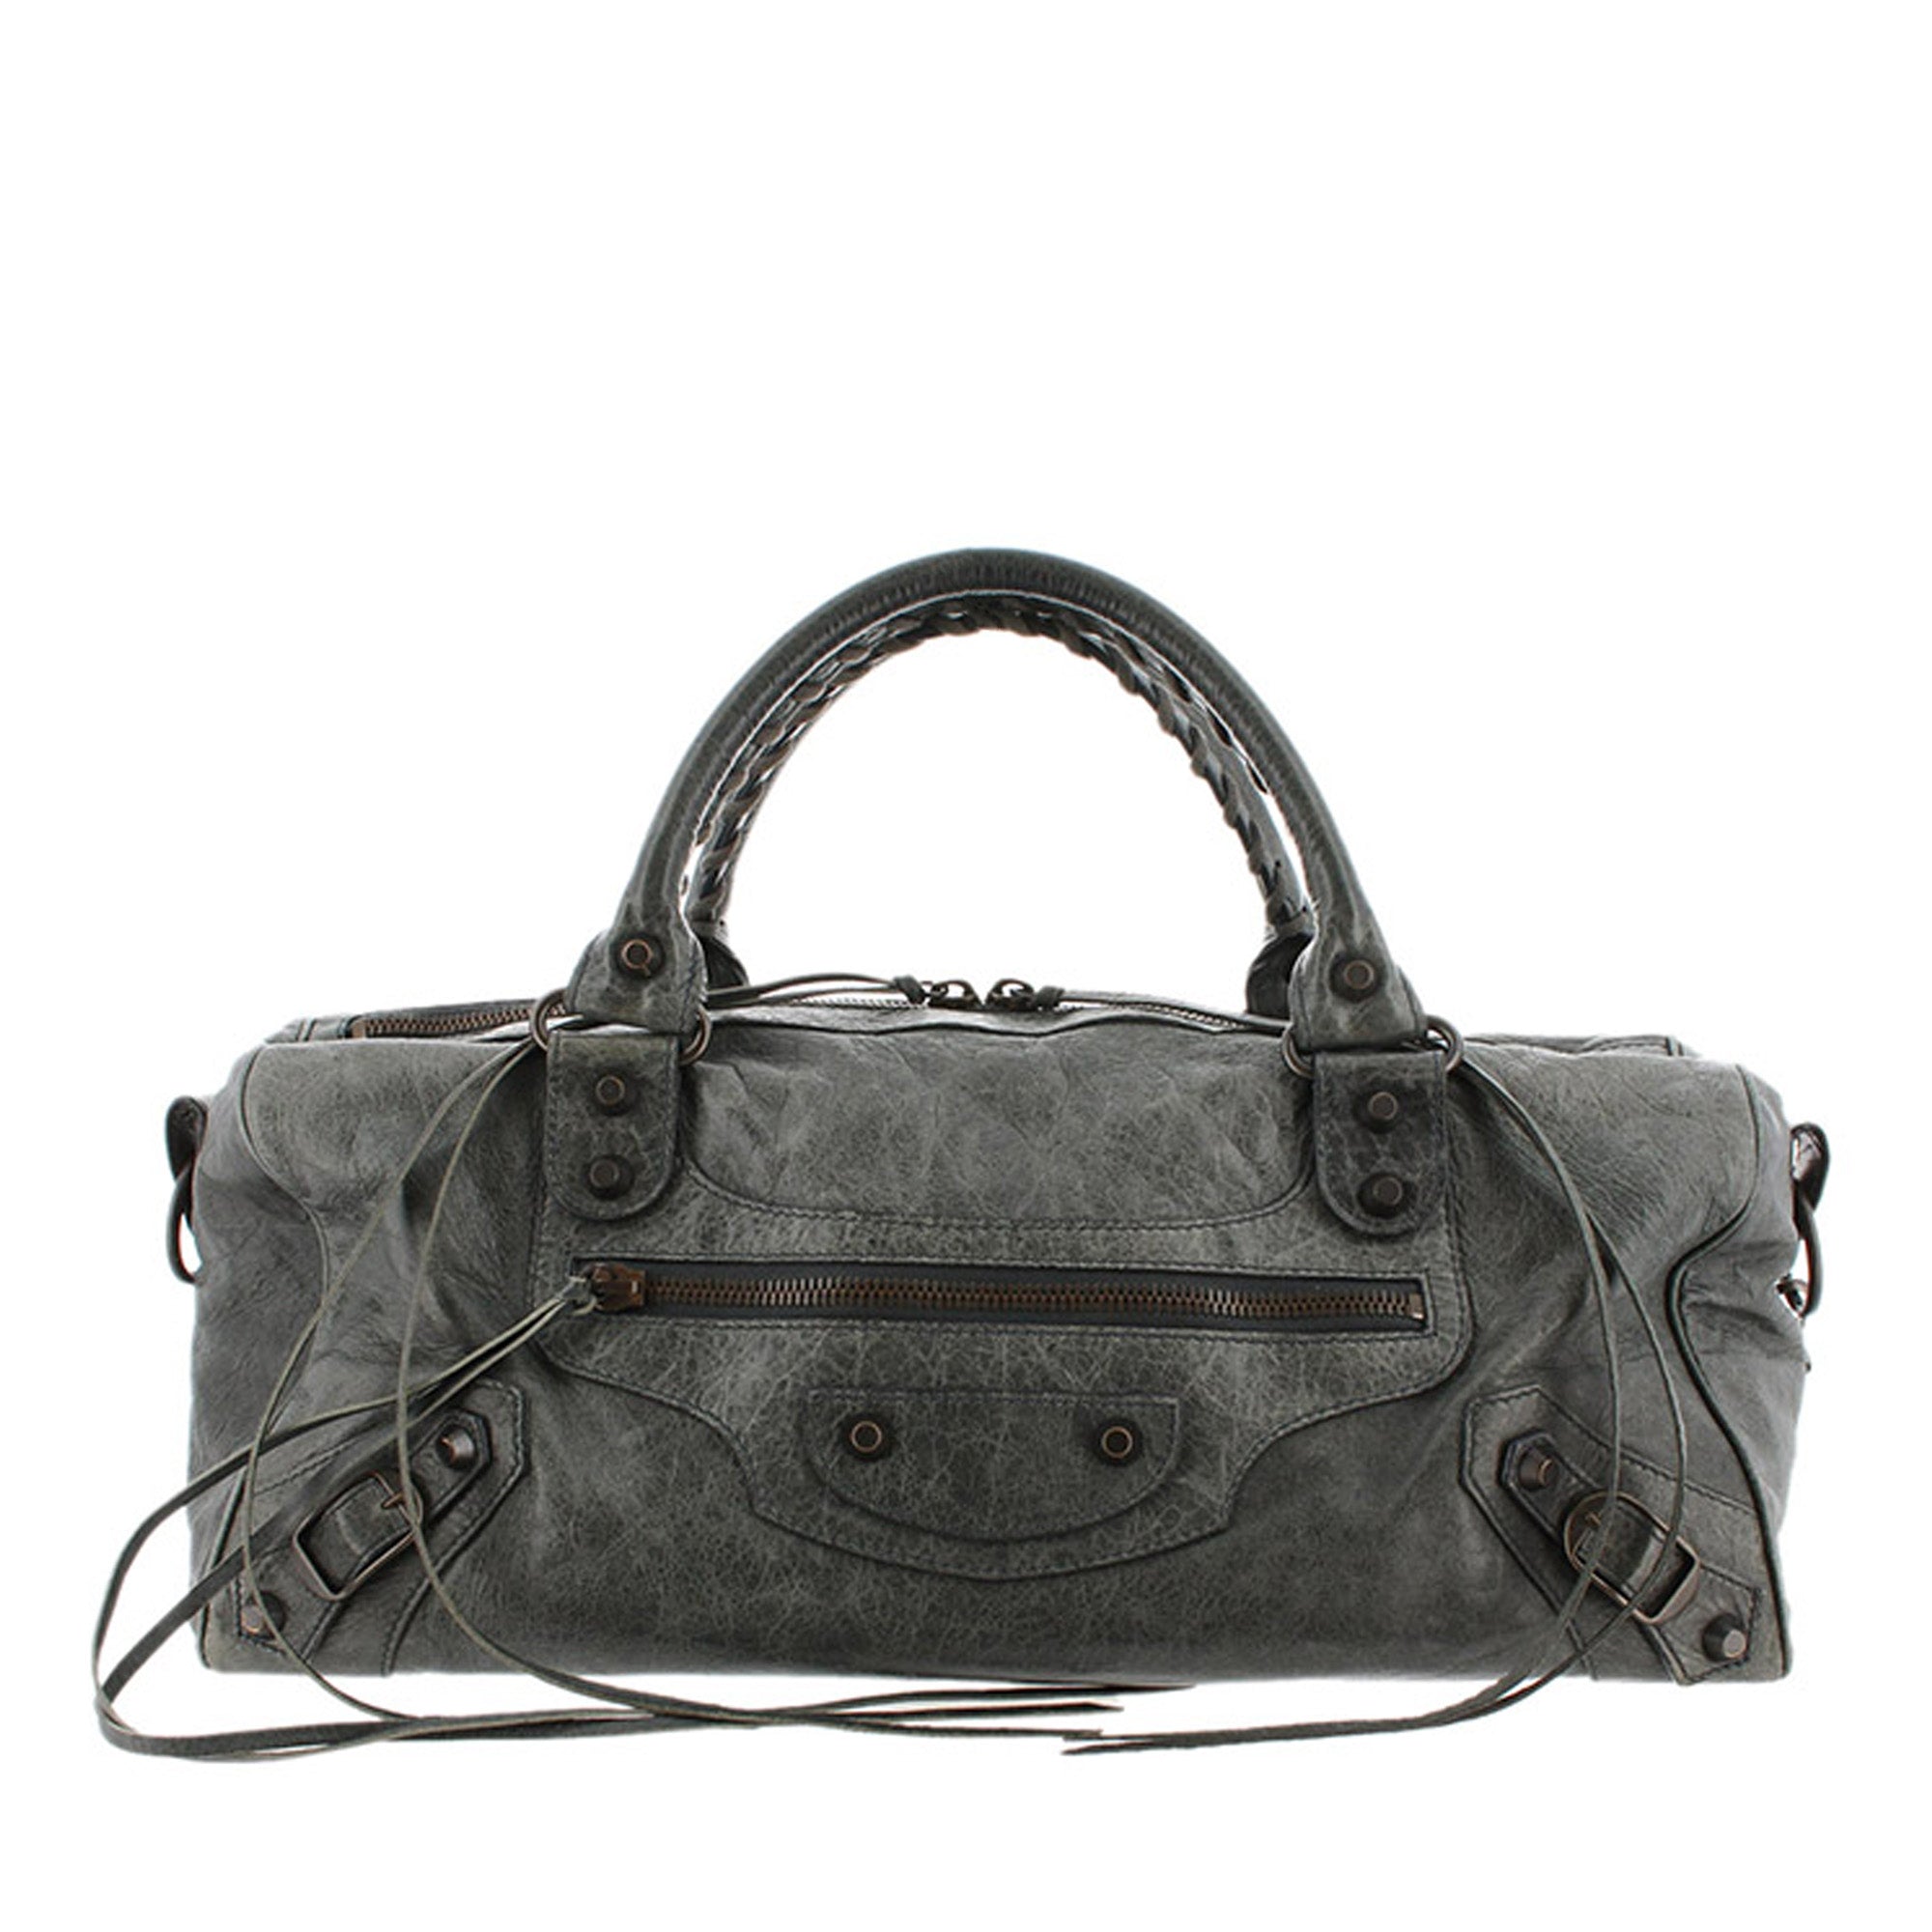 balenciaga leather handbag